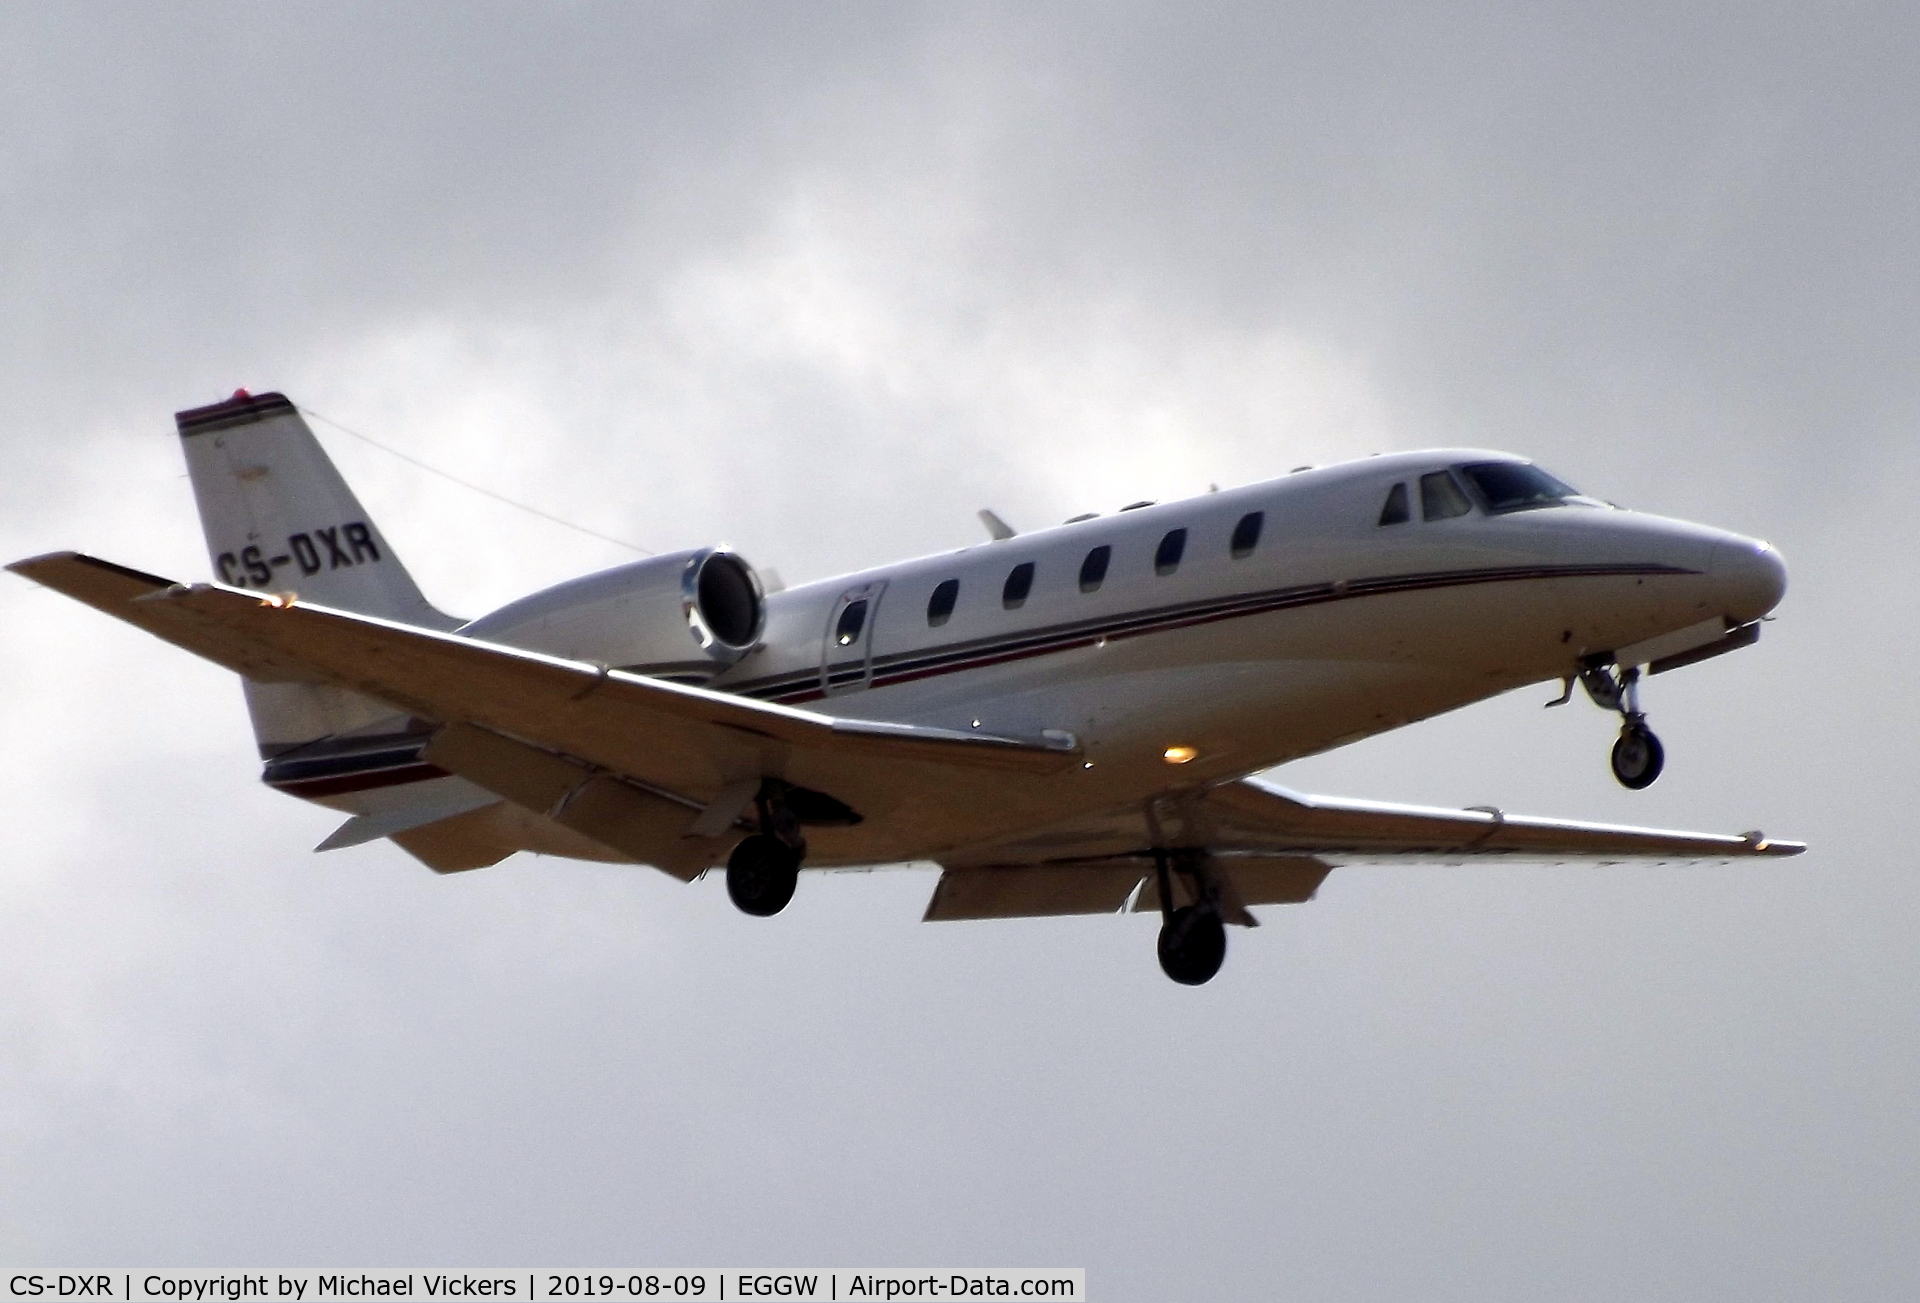 CS-DXR, 2007 Cessna 560 Citation Excel C/N 560-5748, Landing runway 26 at LTN